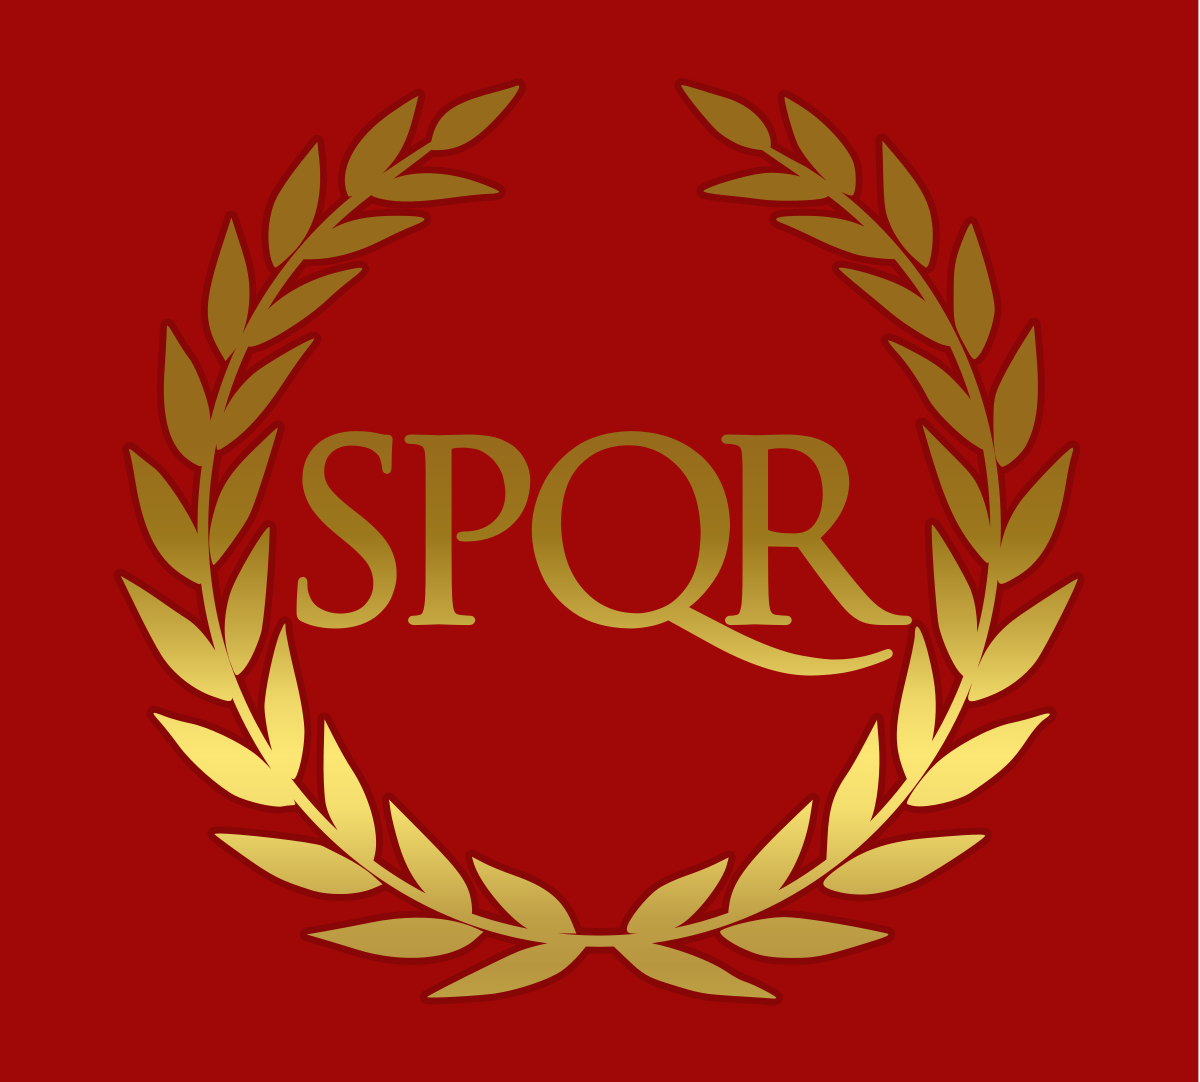 официальный язык римской империи